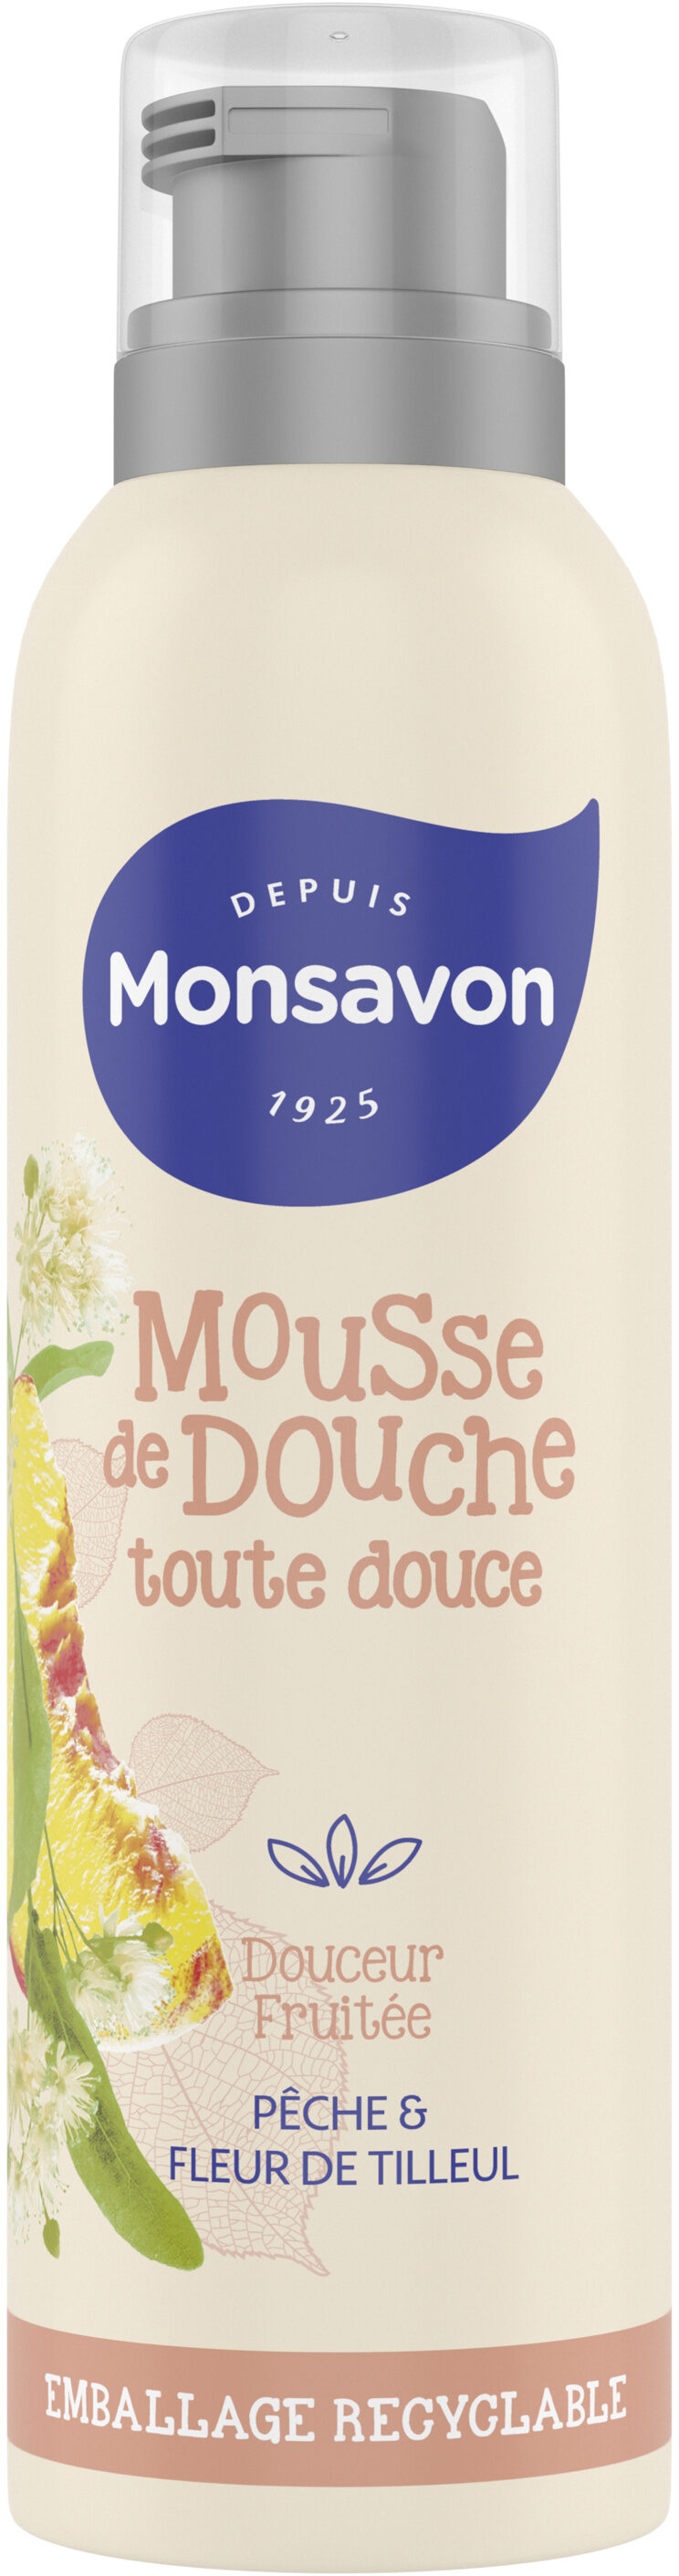 Monsavon Gel Douche Mousse Douceur Fruitée Pêche & Tilleul - نتاج - fr